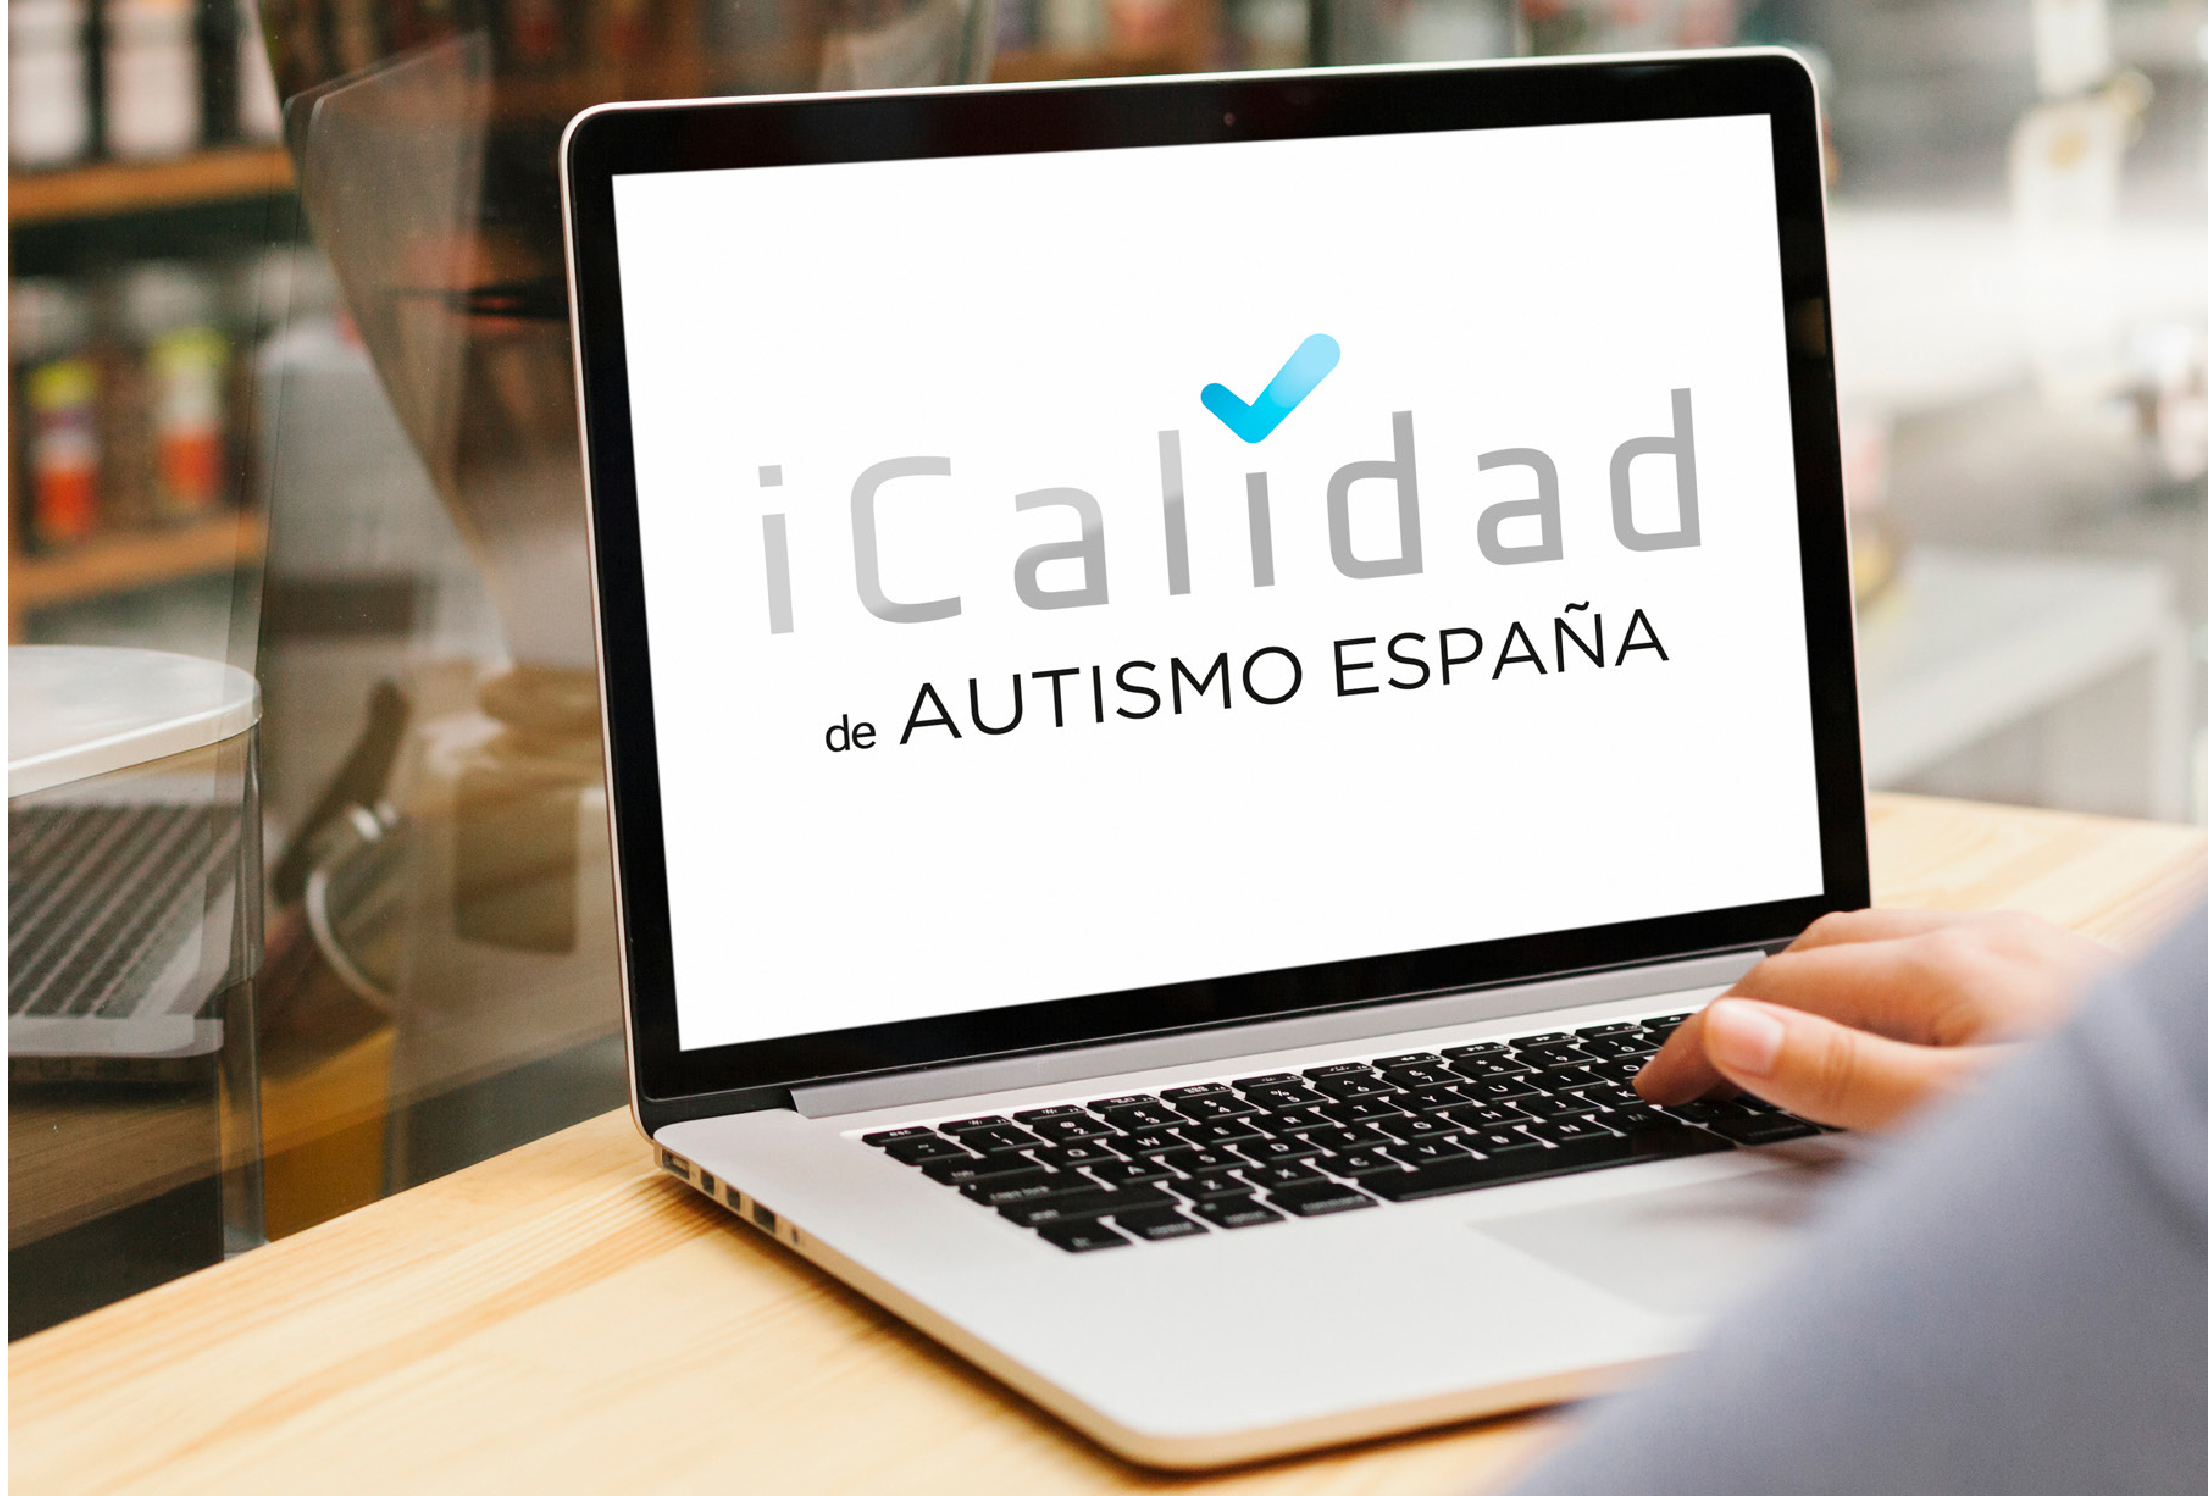 Imagen de ordenador con logo de iCalidad